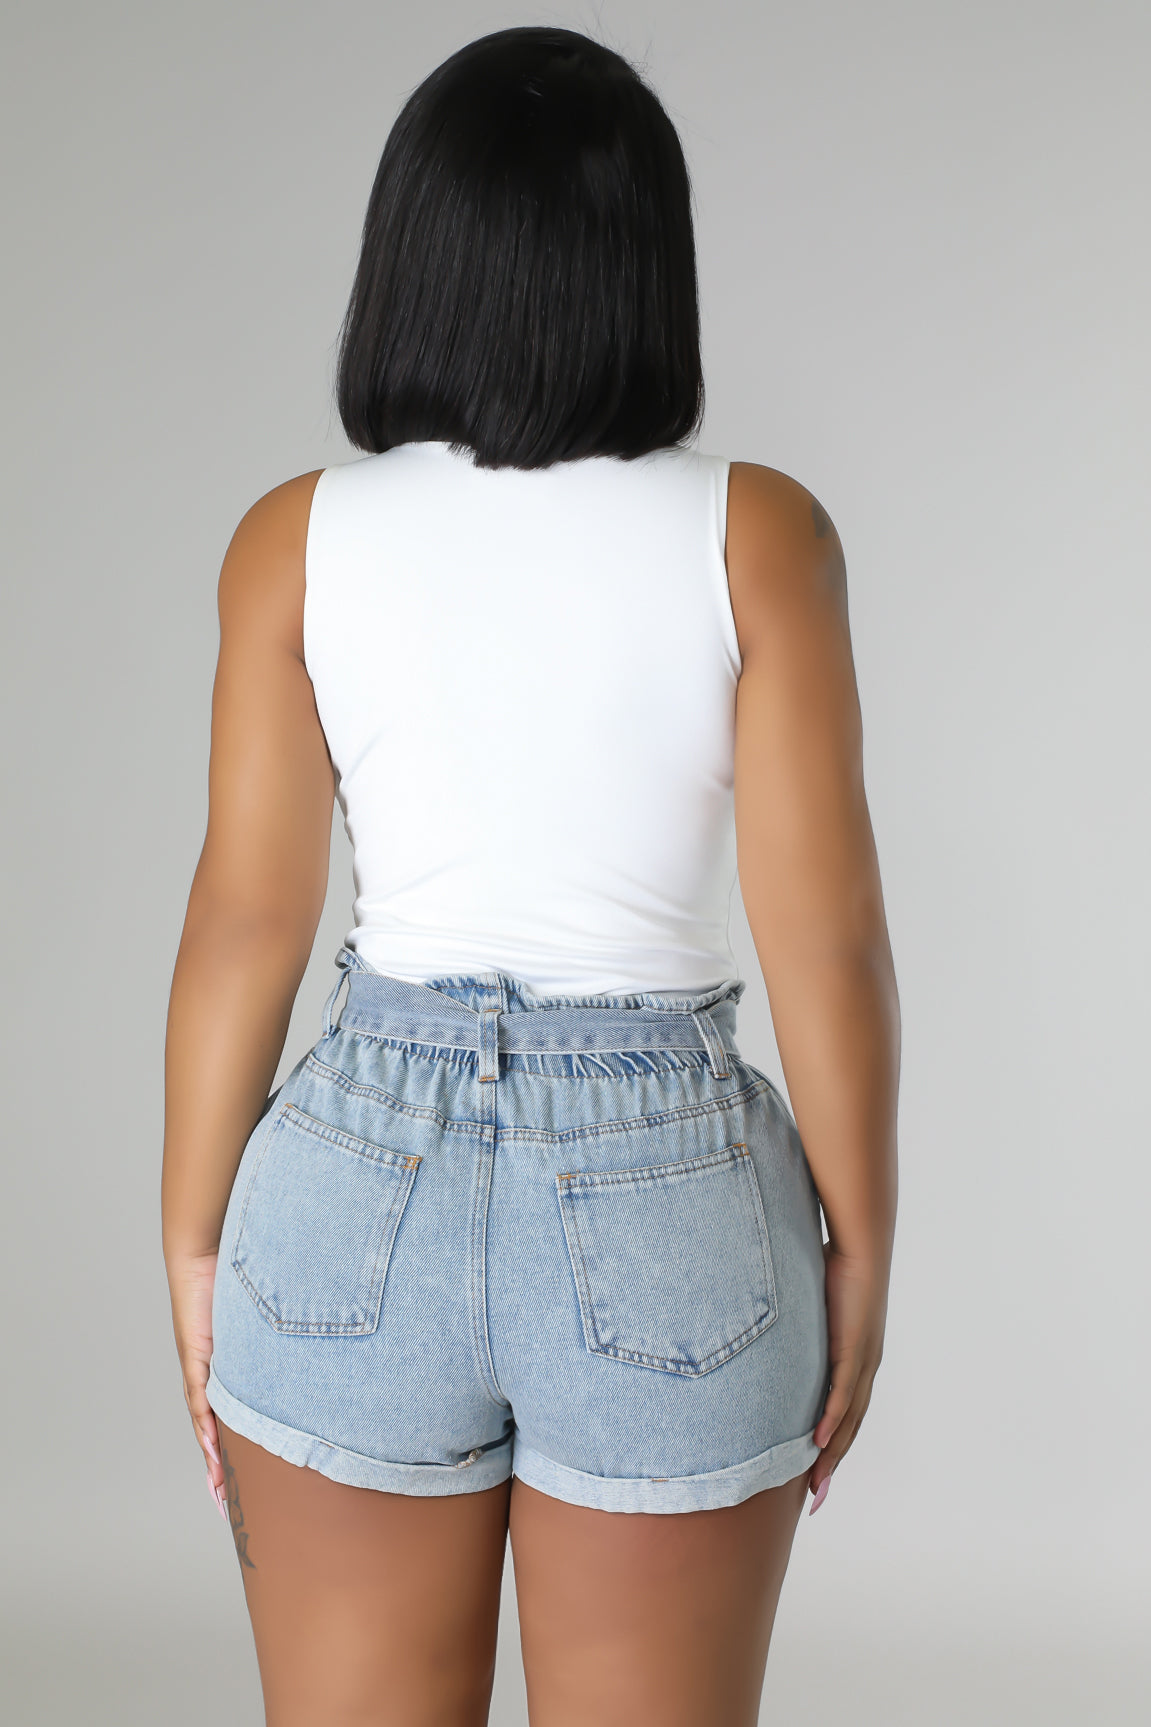 Nyana Babe Shorts